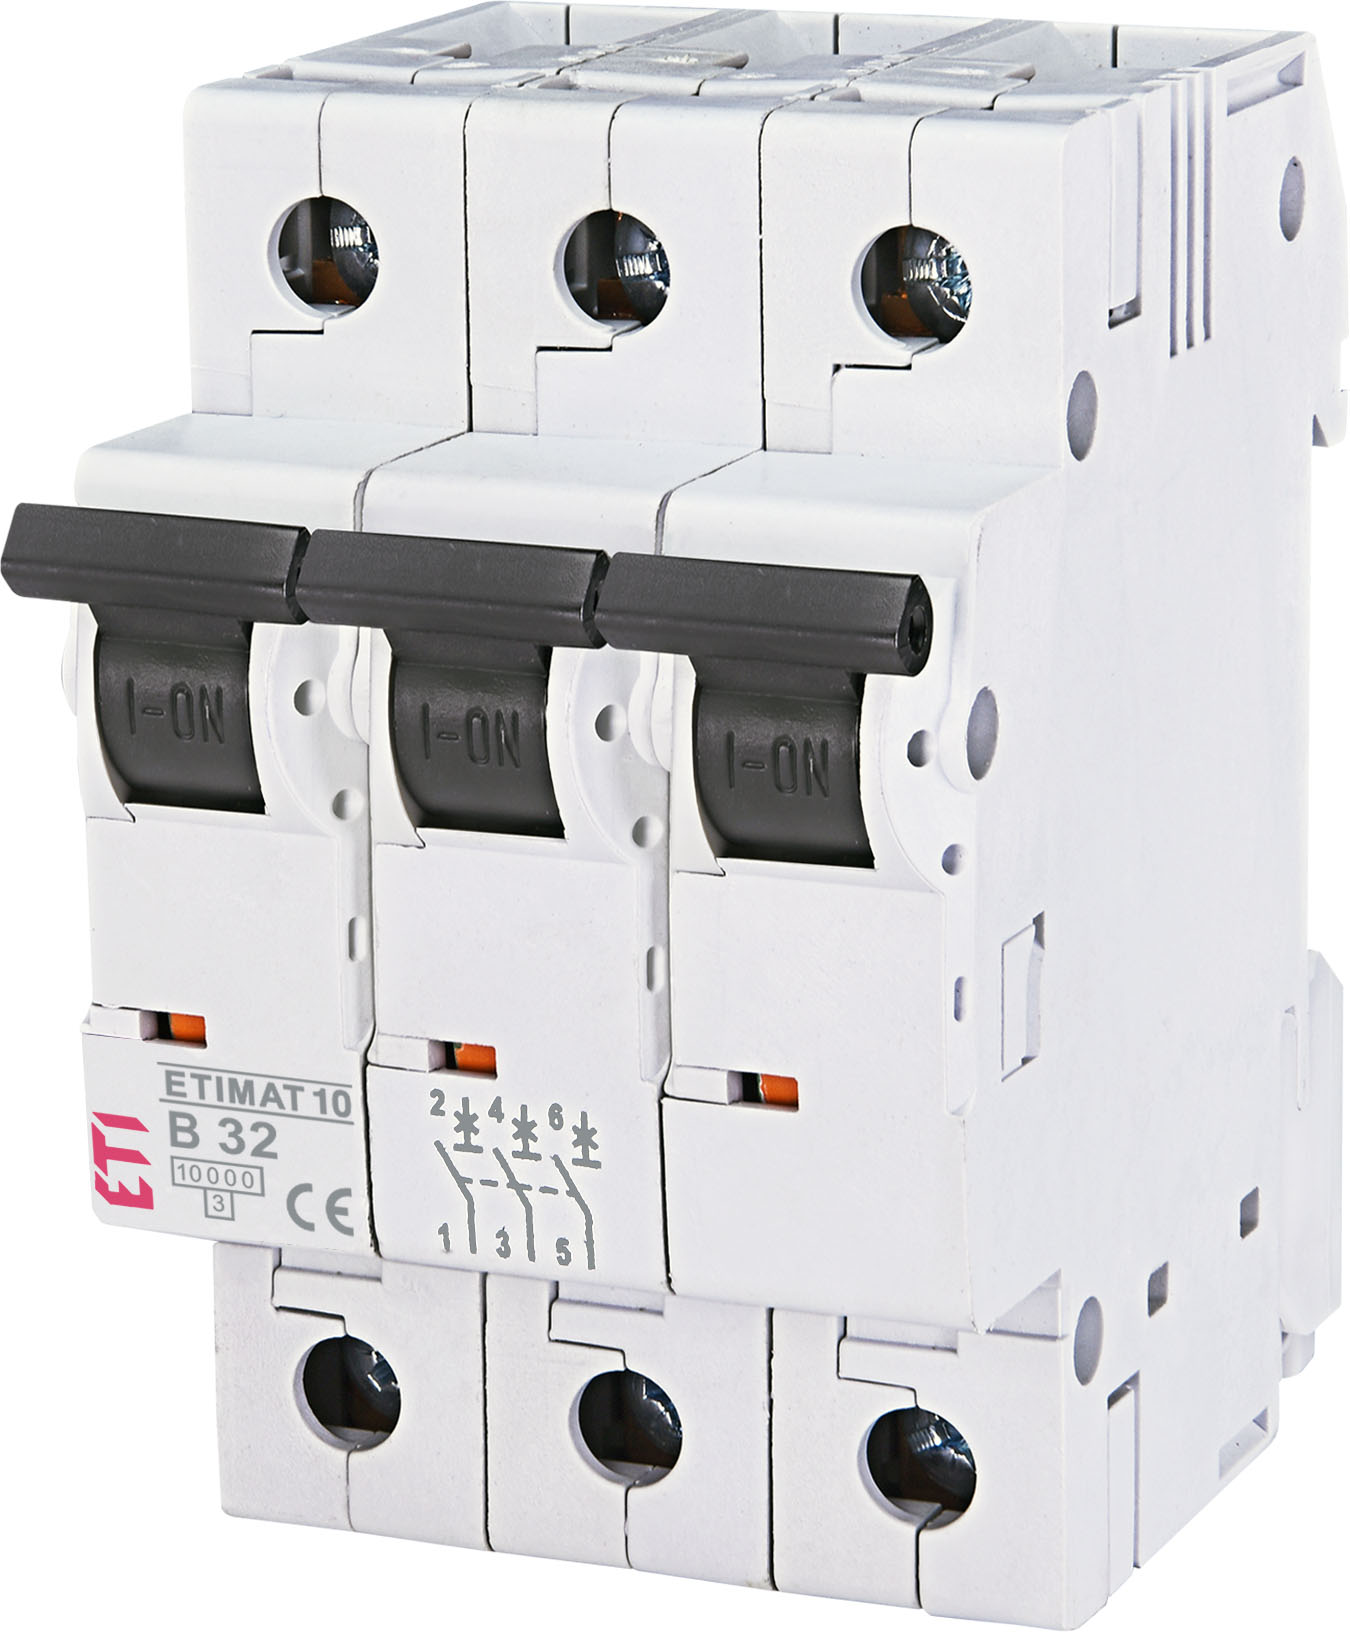 Автоматичний вимикач ETI ETIMAT 10 3p B32 (002125719)